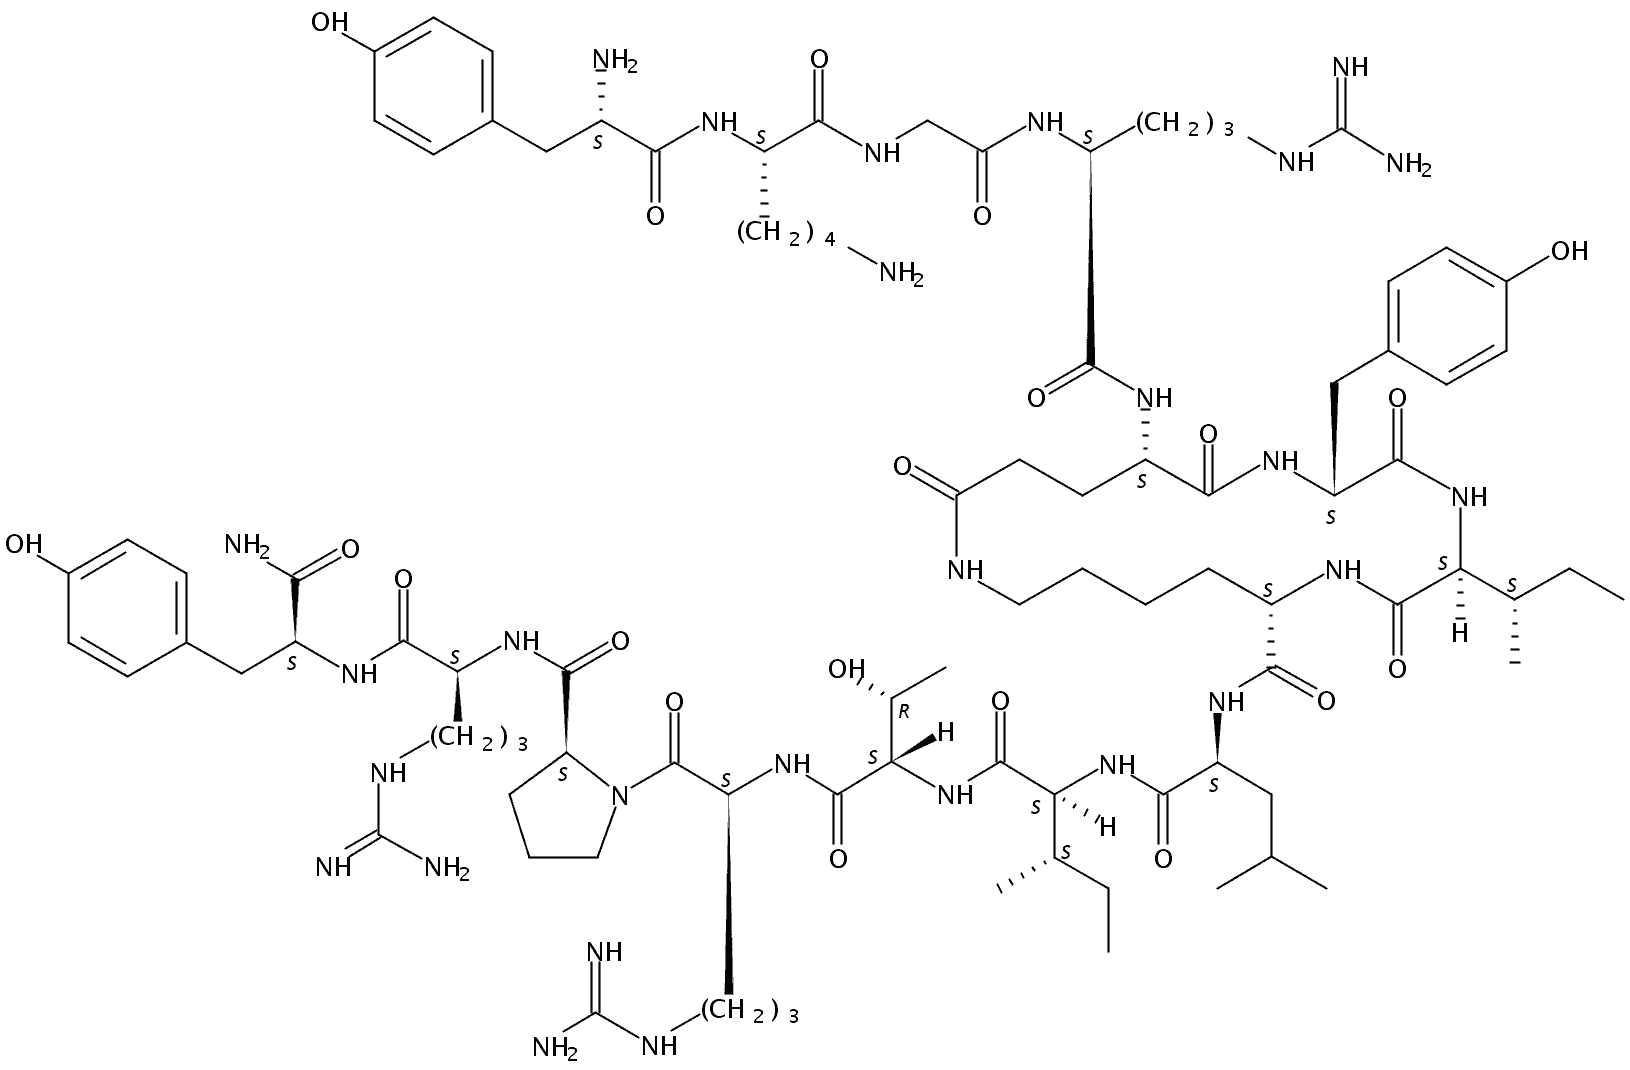 TYR-LYS-GLY-(CYCLO(GLU26-LYS29),PRO34)-NEUROPEPTIDE Y (25-36)